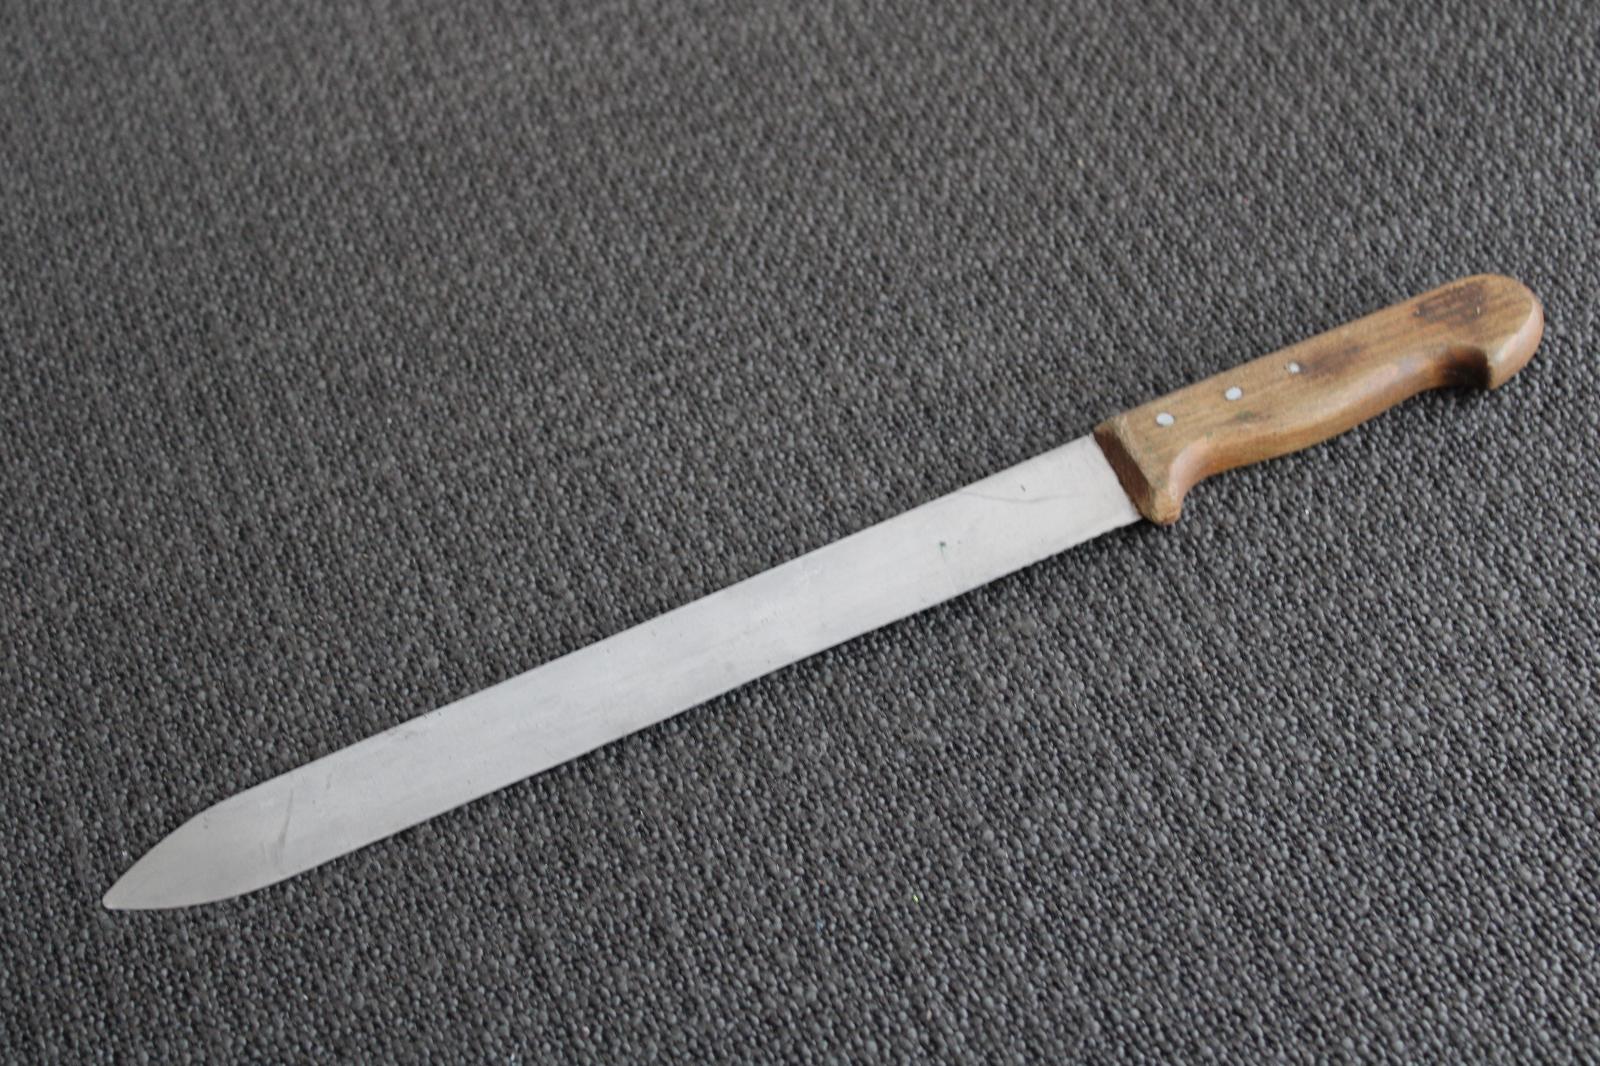 D. Kuchyňský nůž 43 cm stará ocel  - Vybavení do kuchyně